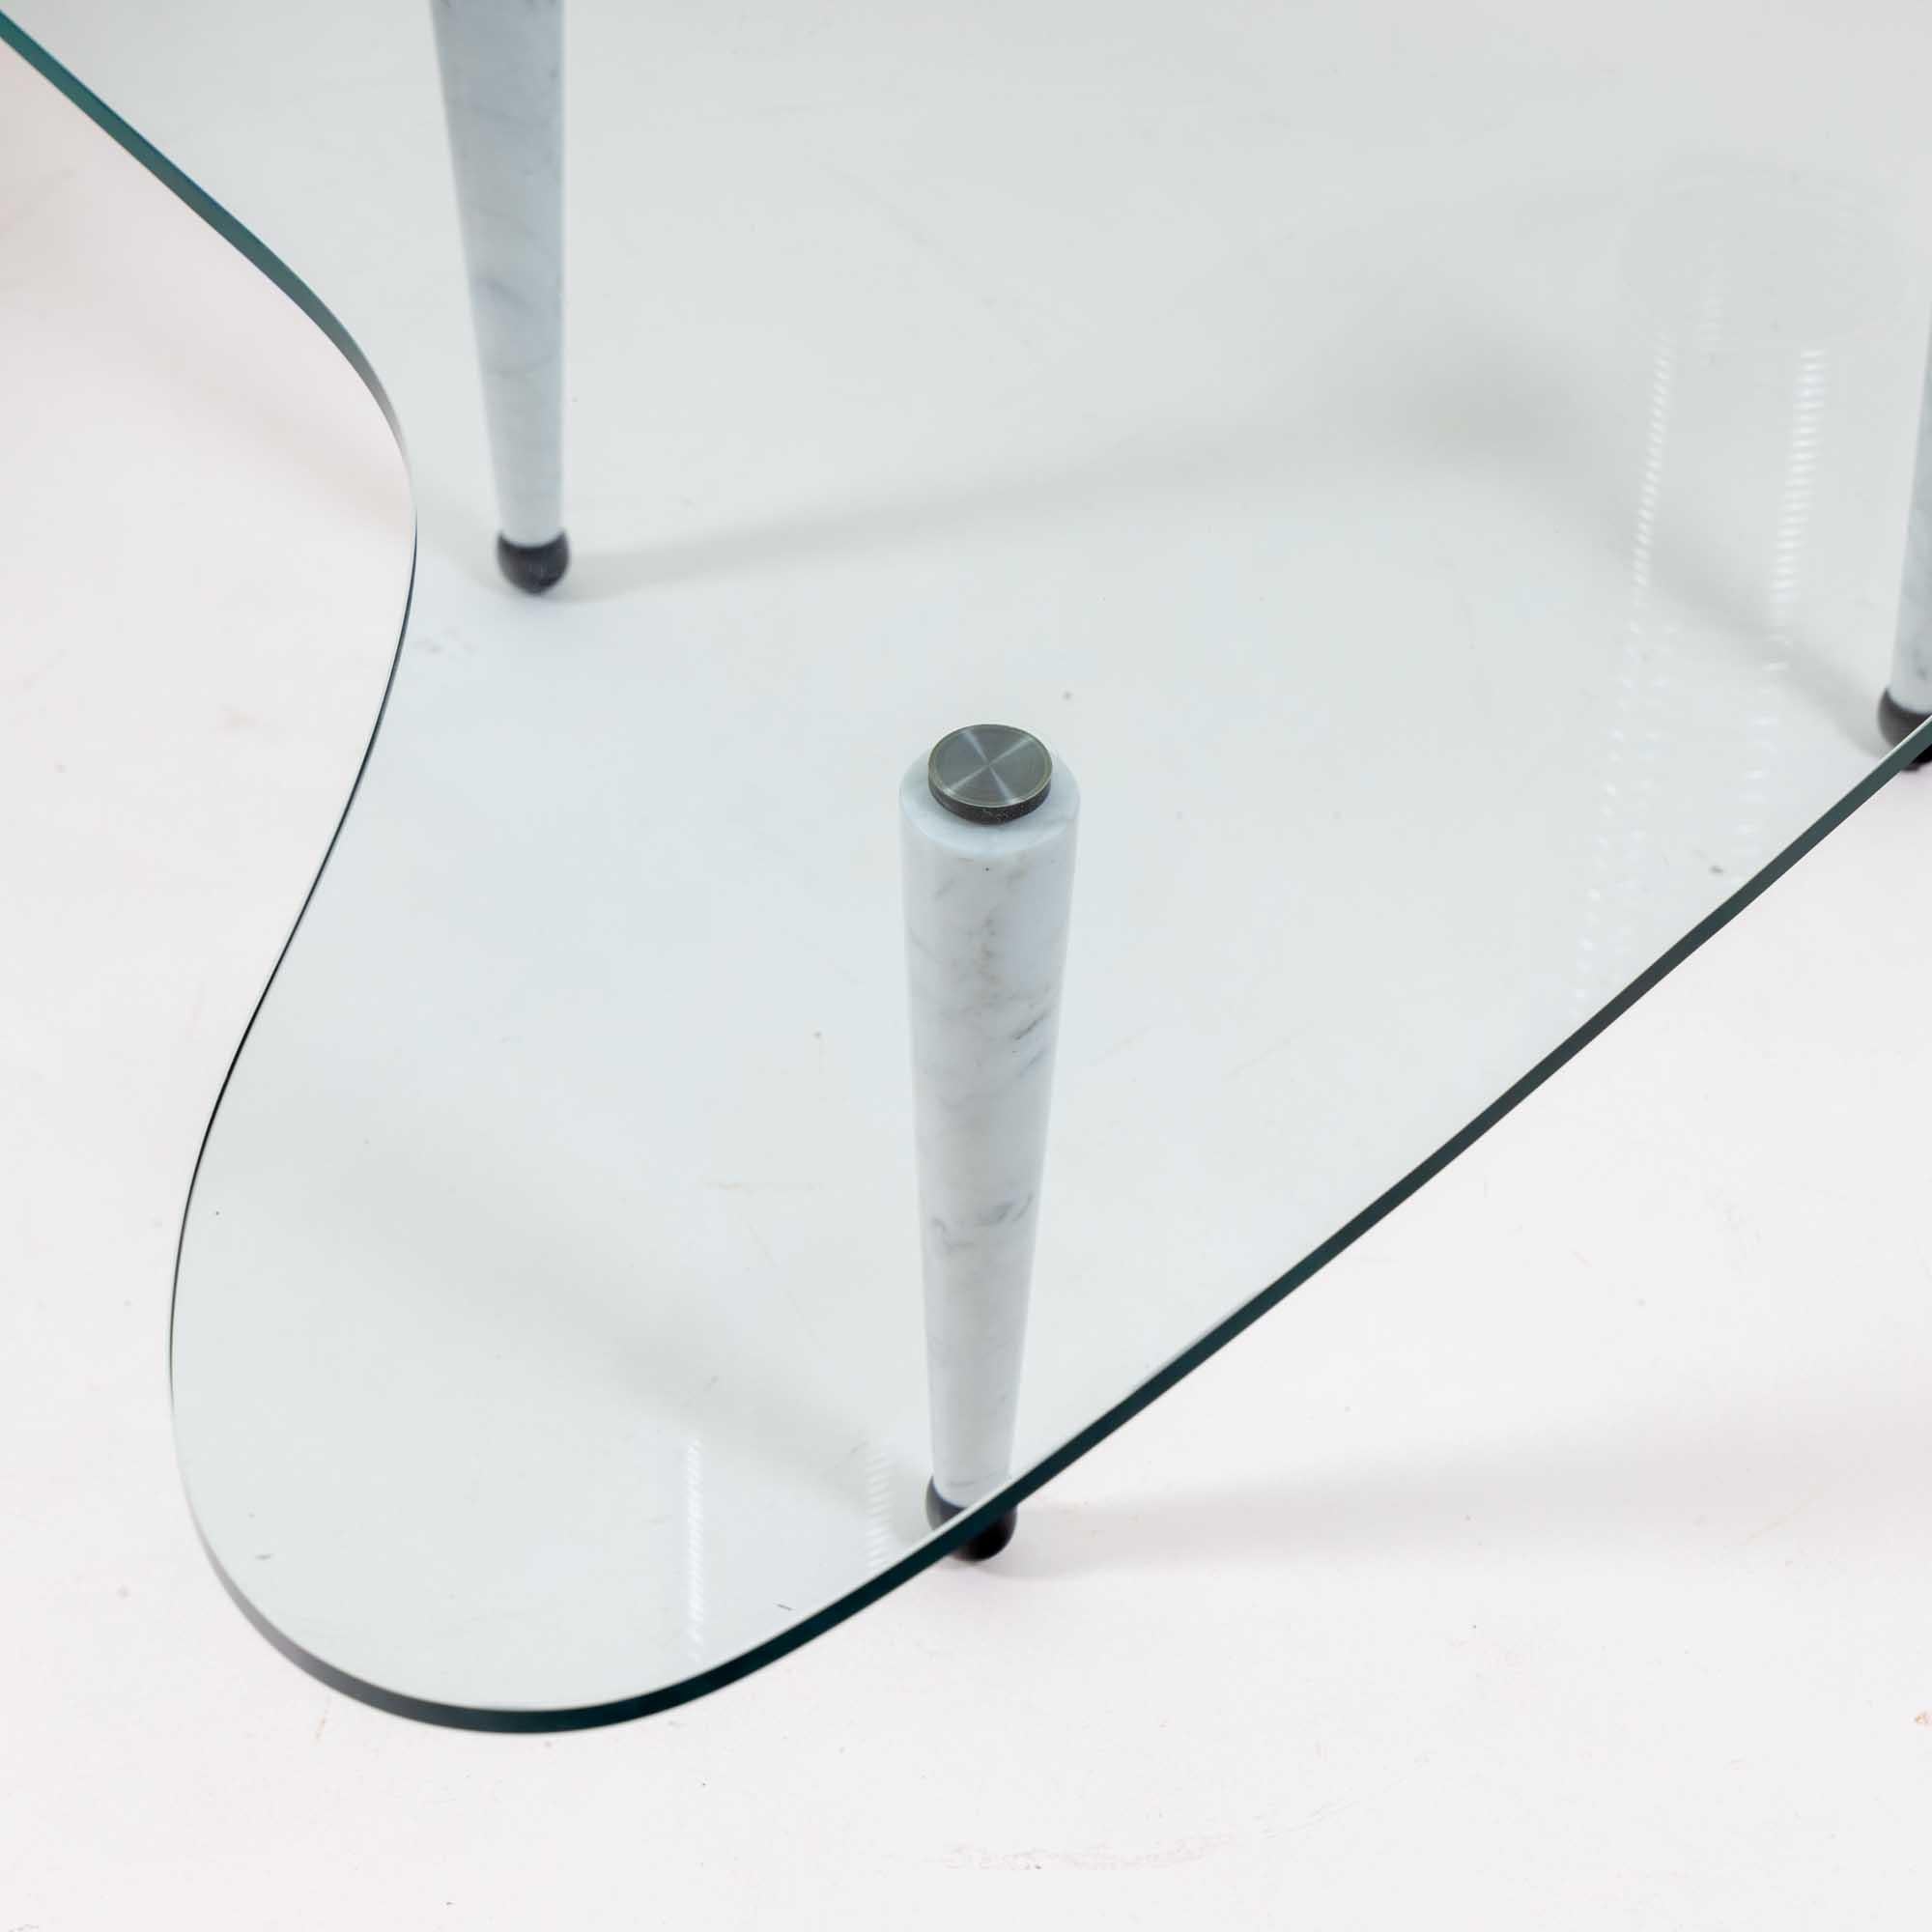 Table basse italienne sculpturale avec plateau en verre en forme de boomerang. 
La table repose sur trois pieds coniques en marbre blanc.